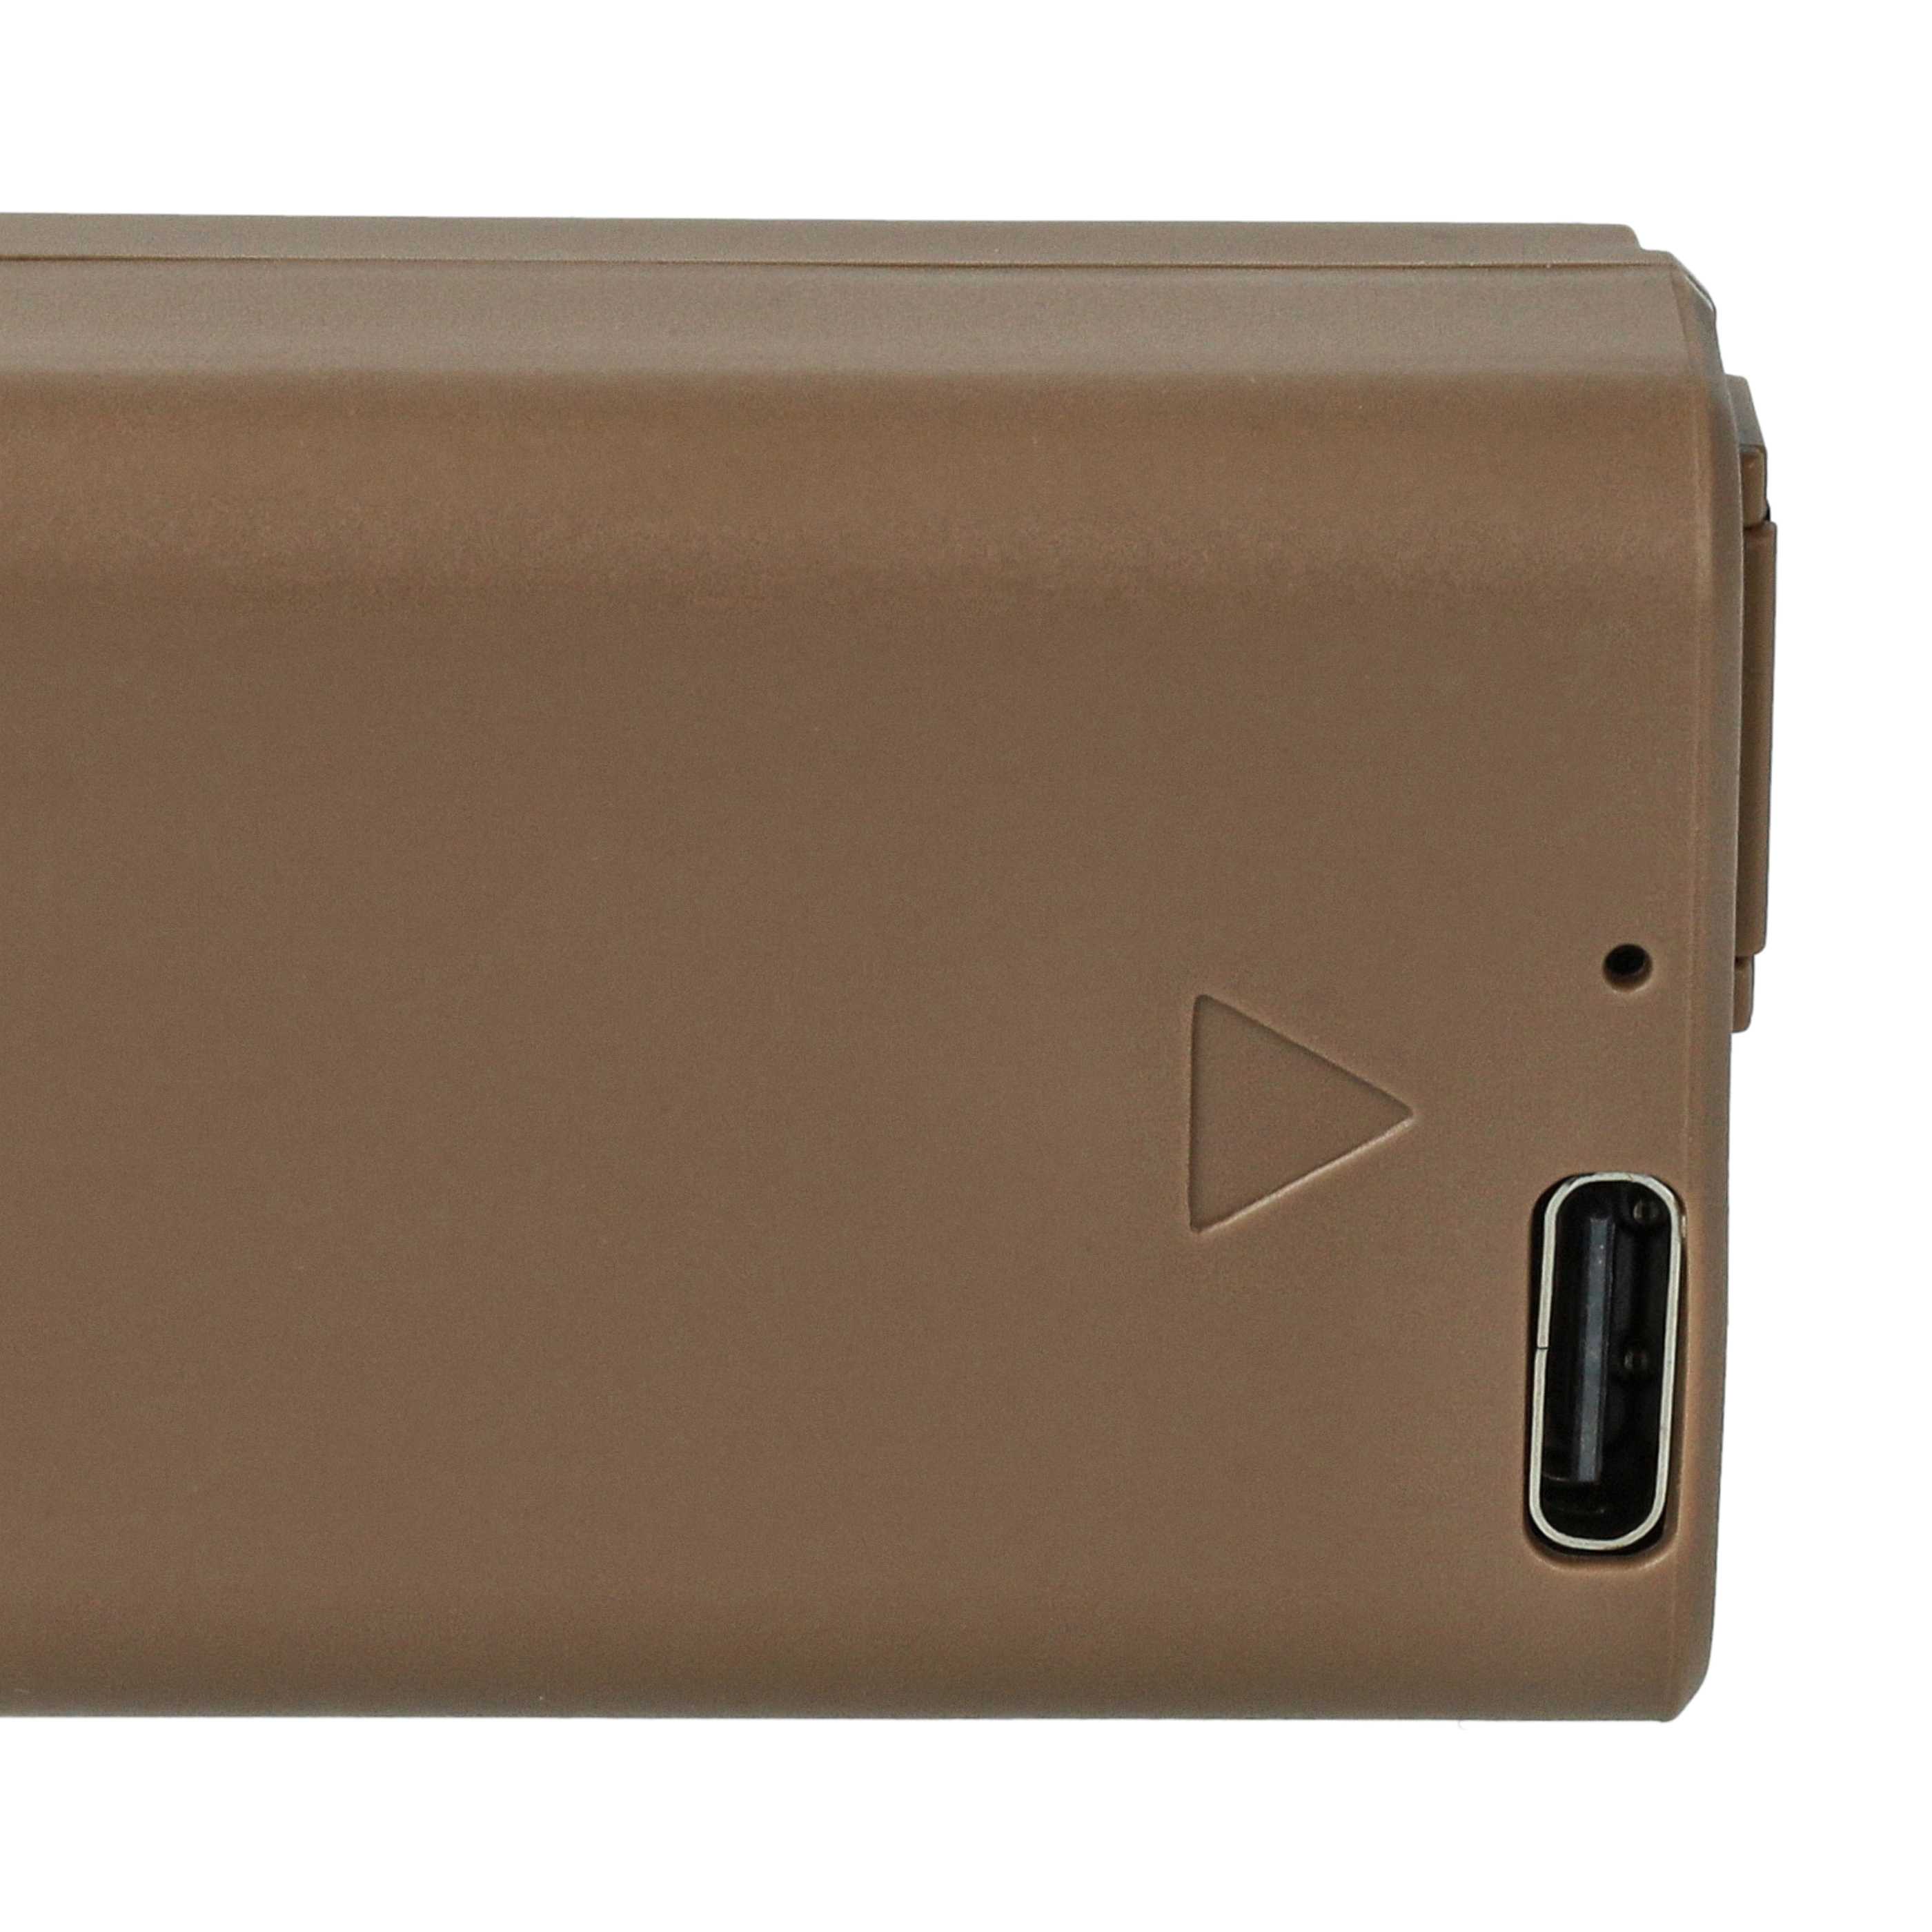 Akumulator do aparatu cyfrowego zamiennik Sony NP-FW50 - 1030 mAh 7,4 V Li-Ion z chipem, z portem USB-C